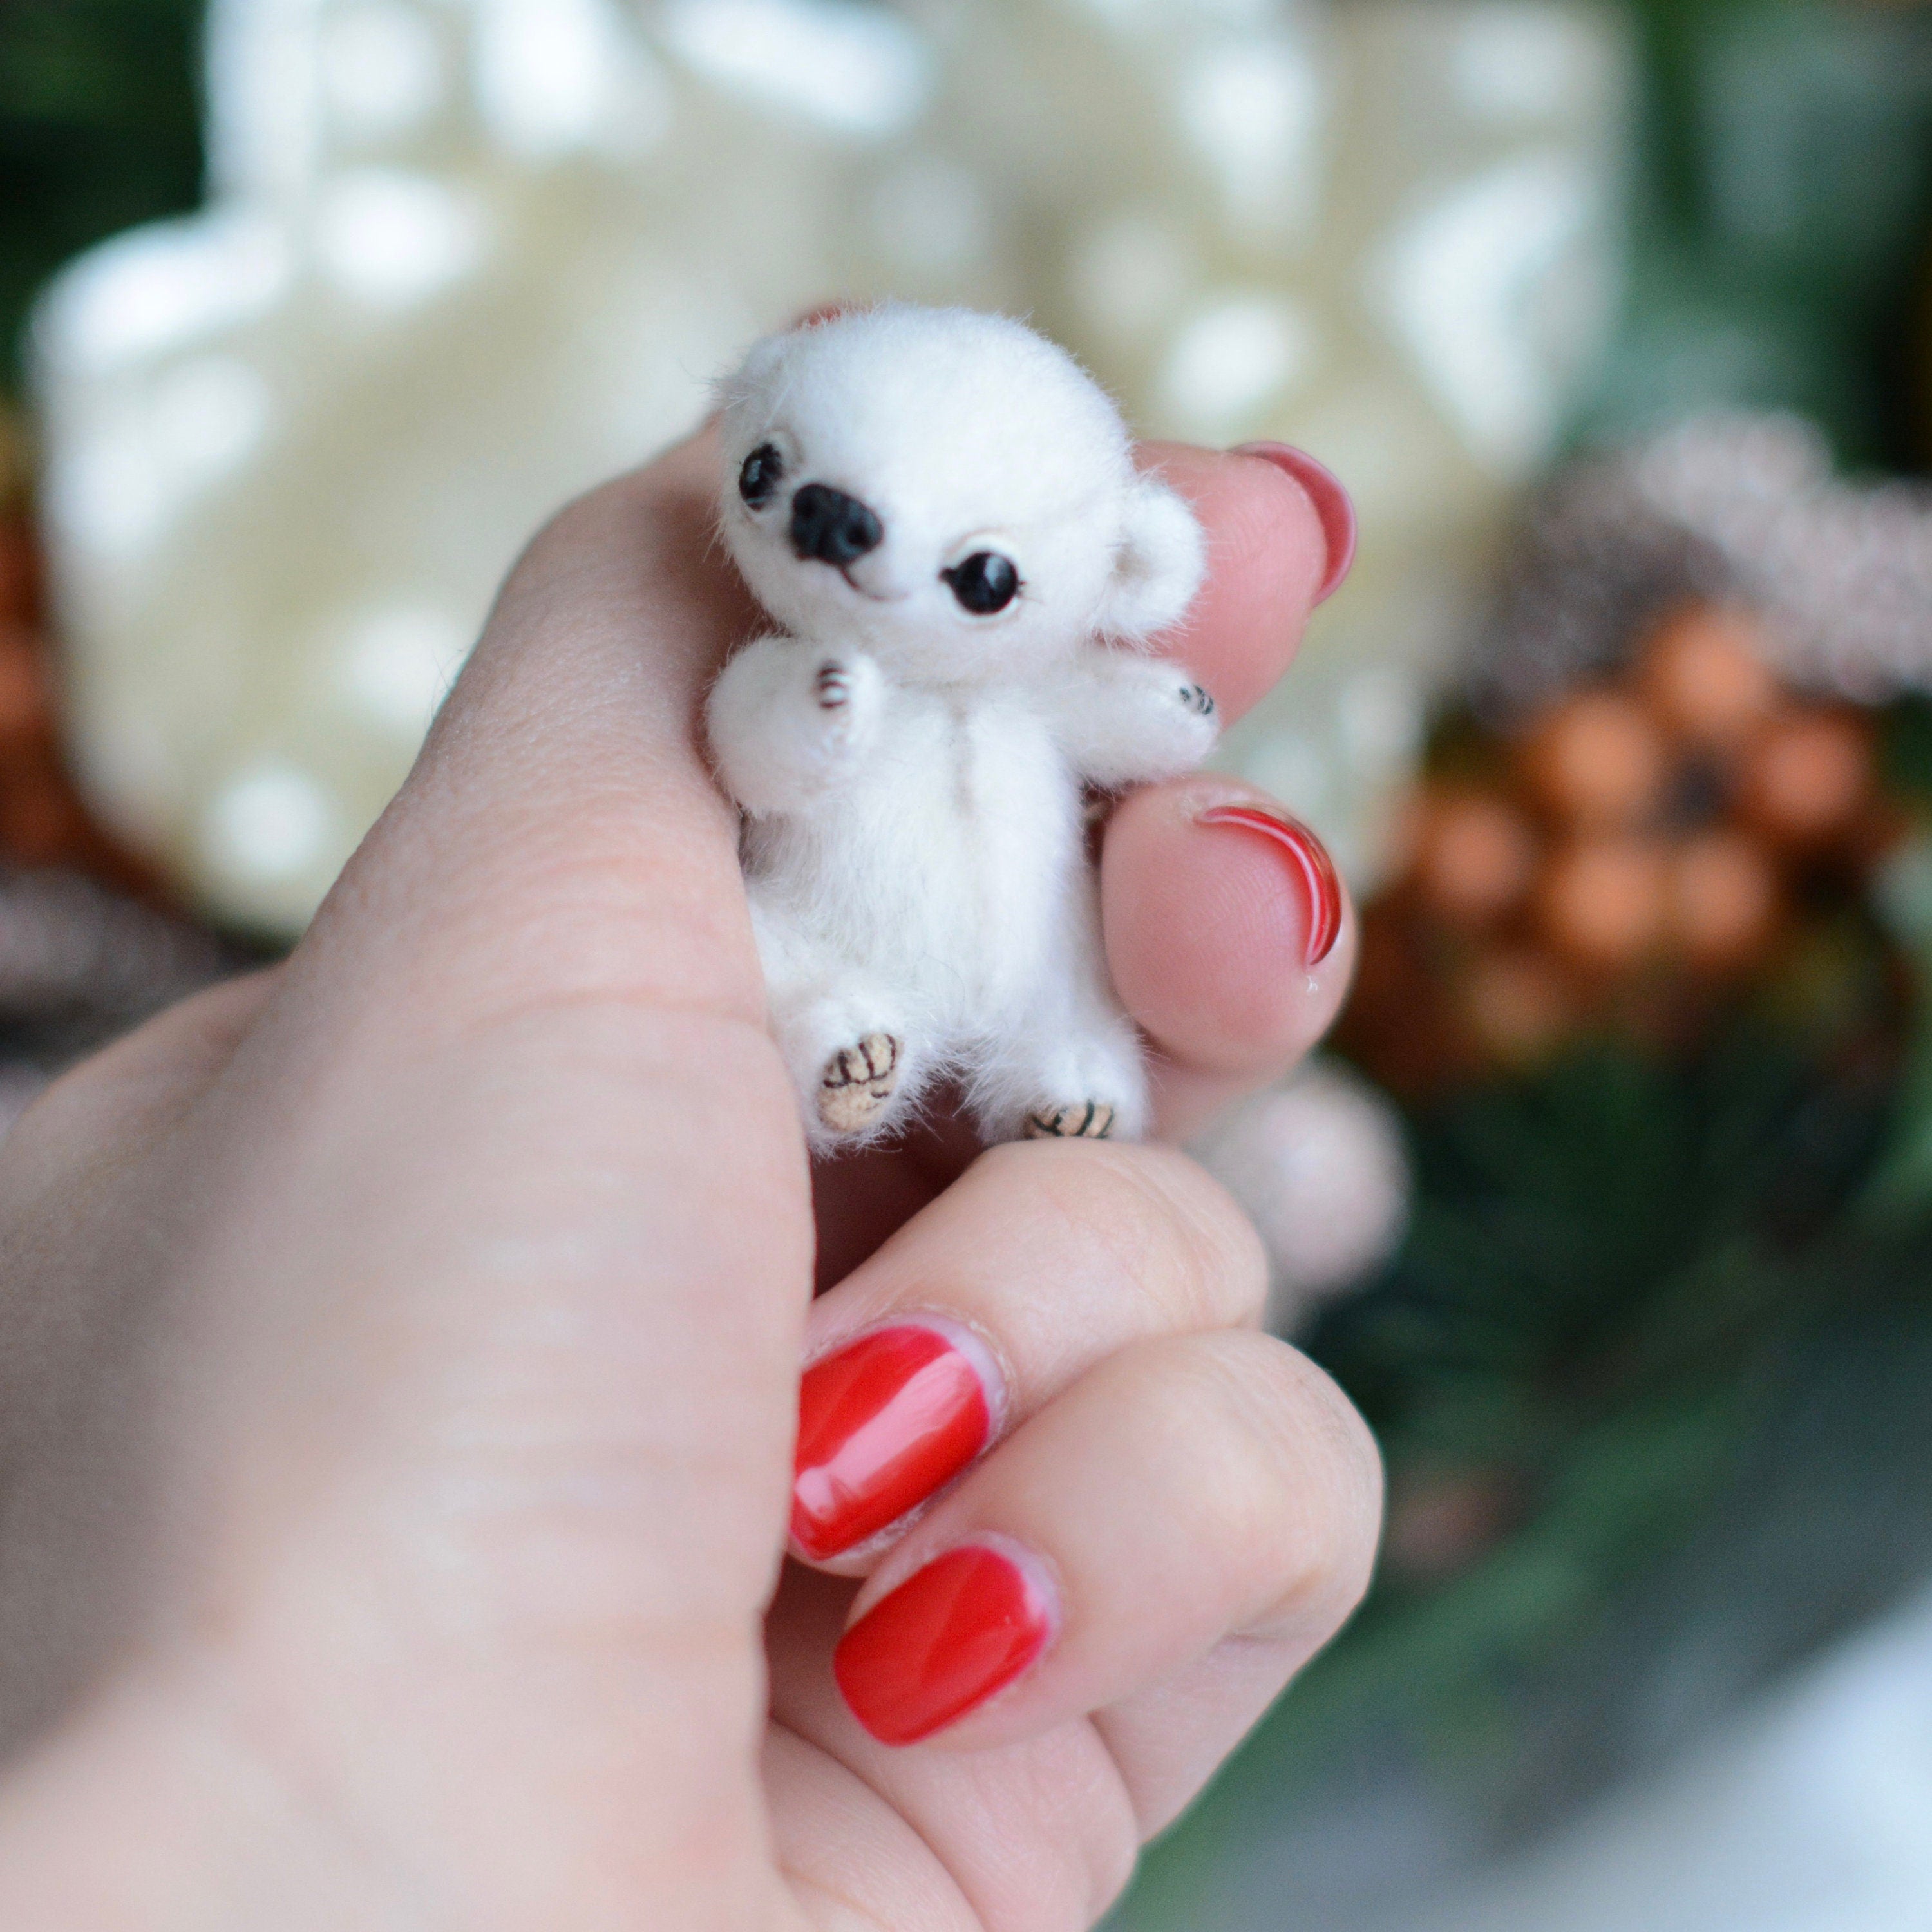 Sewing PATTERN PDF Micro white bear, by Tatiana Scalozub, how to make teddy mini teddy bear step by step, diy polar teddy bear